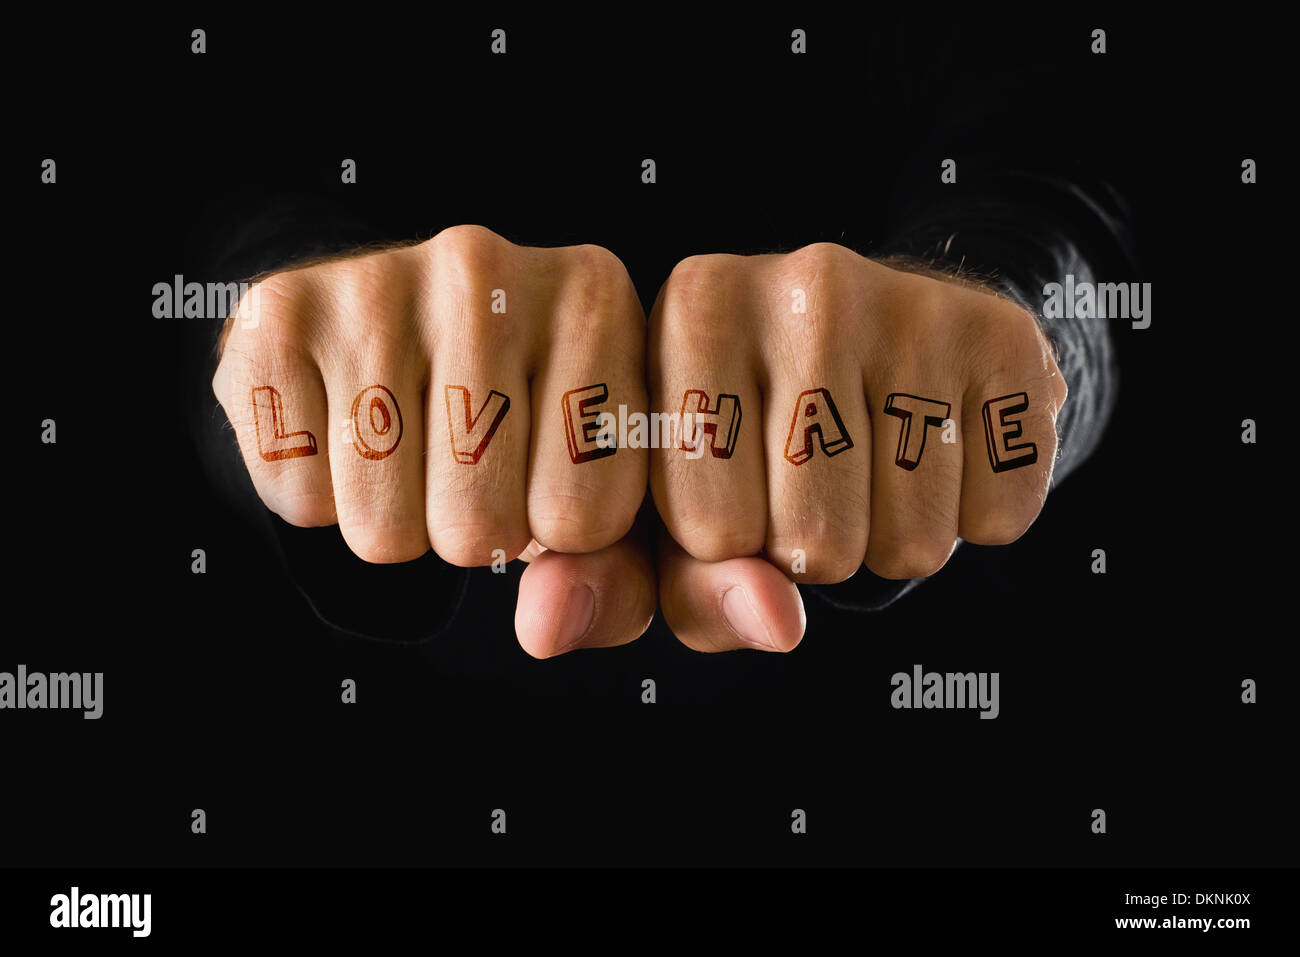 Liebe und Hass Tattoo. Hände mit geballten Fäusten auf dunklem Hintergrund. Kraft, Entschlossenheit, Widerstand-Konzept. Stockfoto